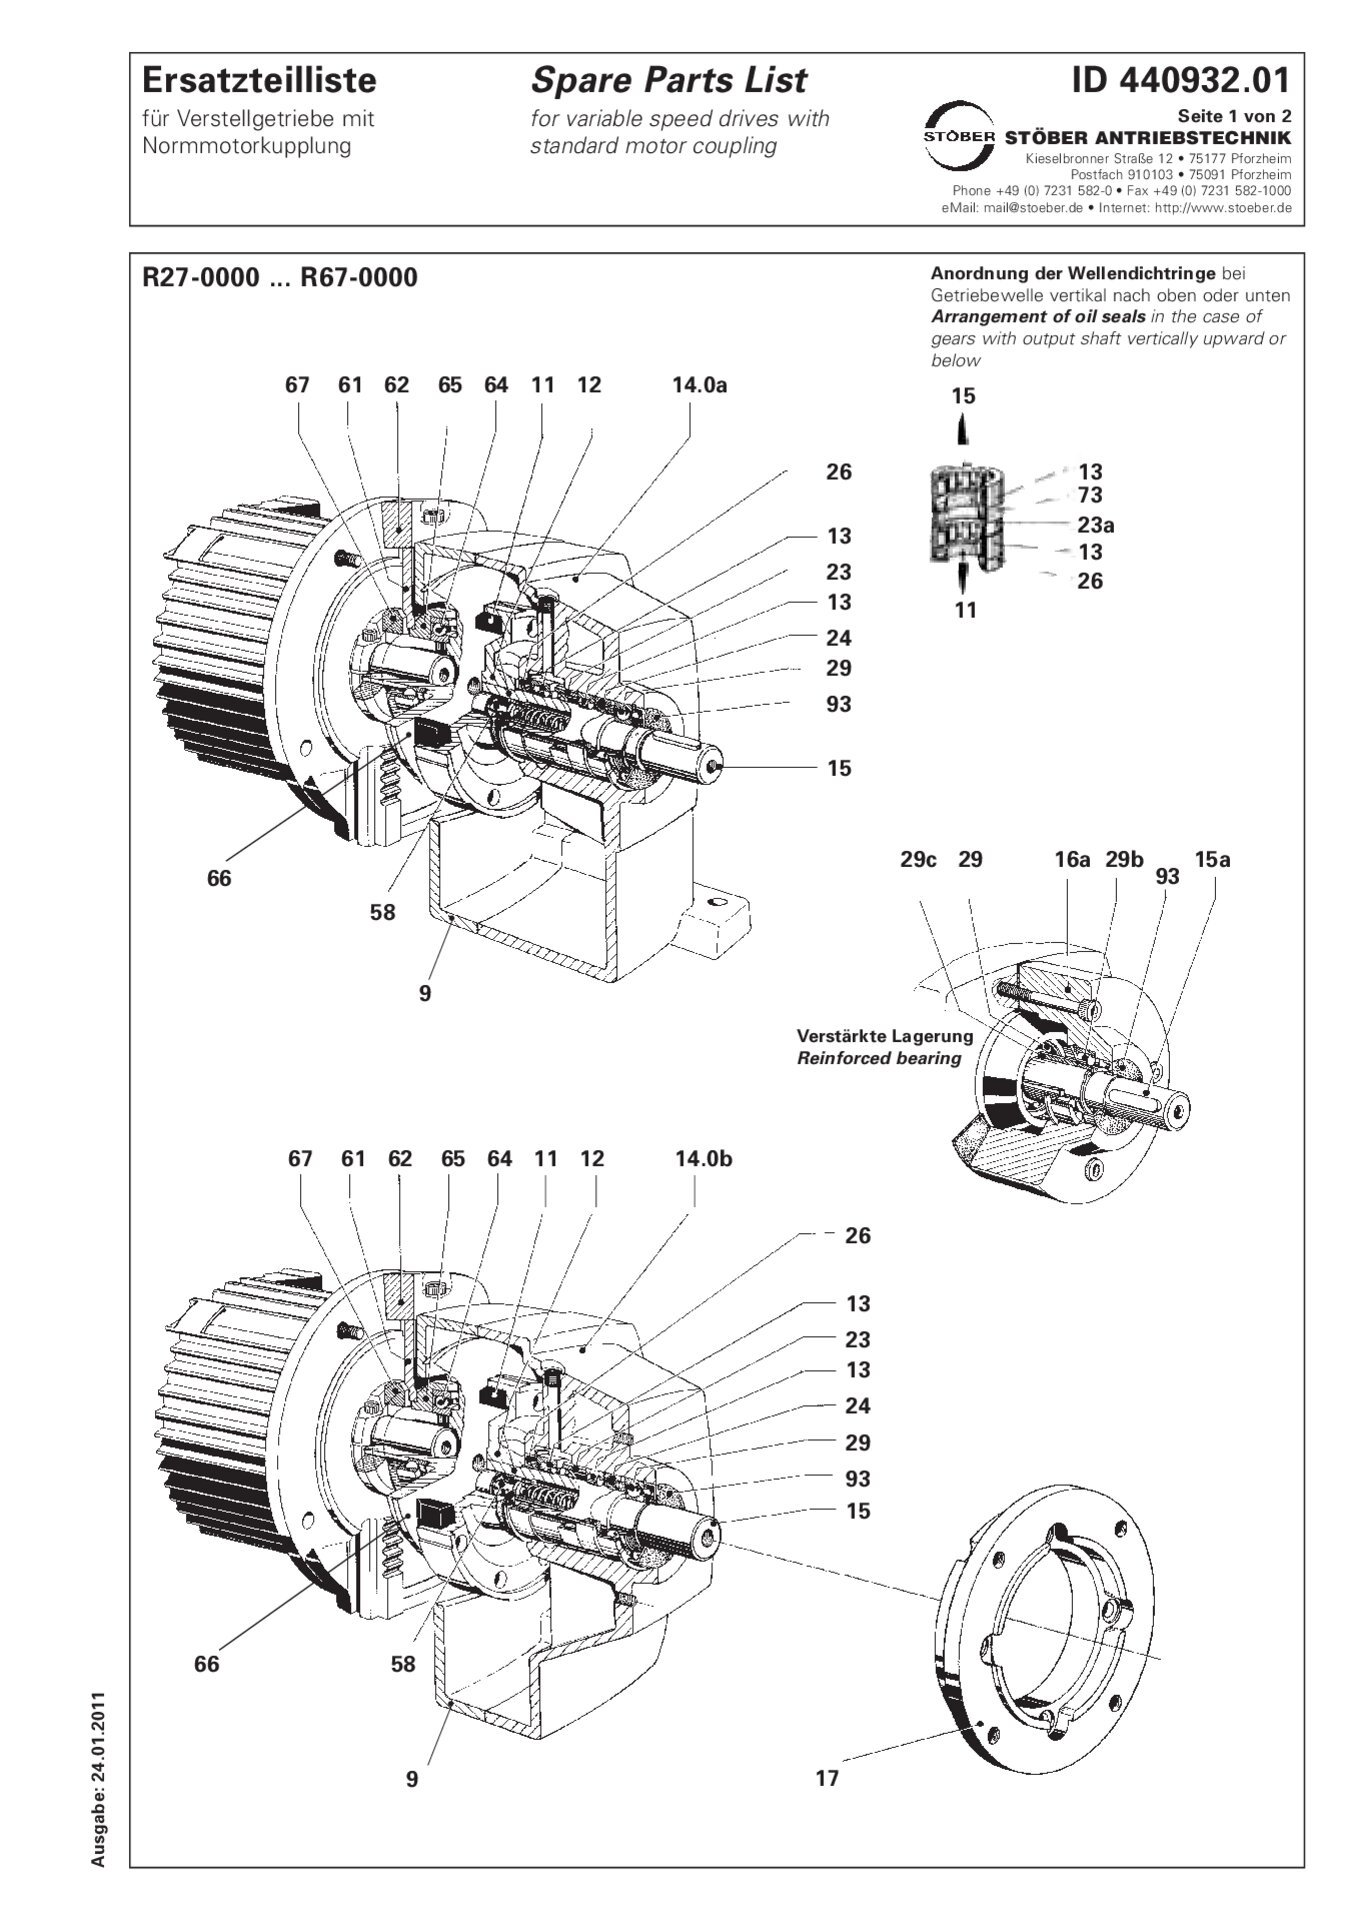 Liste des pièces de rechange R27-0/R37-0/R47-0/R57-0/R67-0 avec accouplement de moteur standard